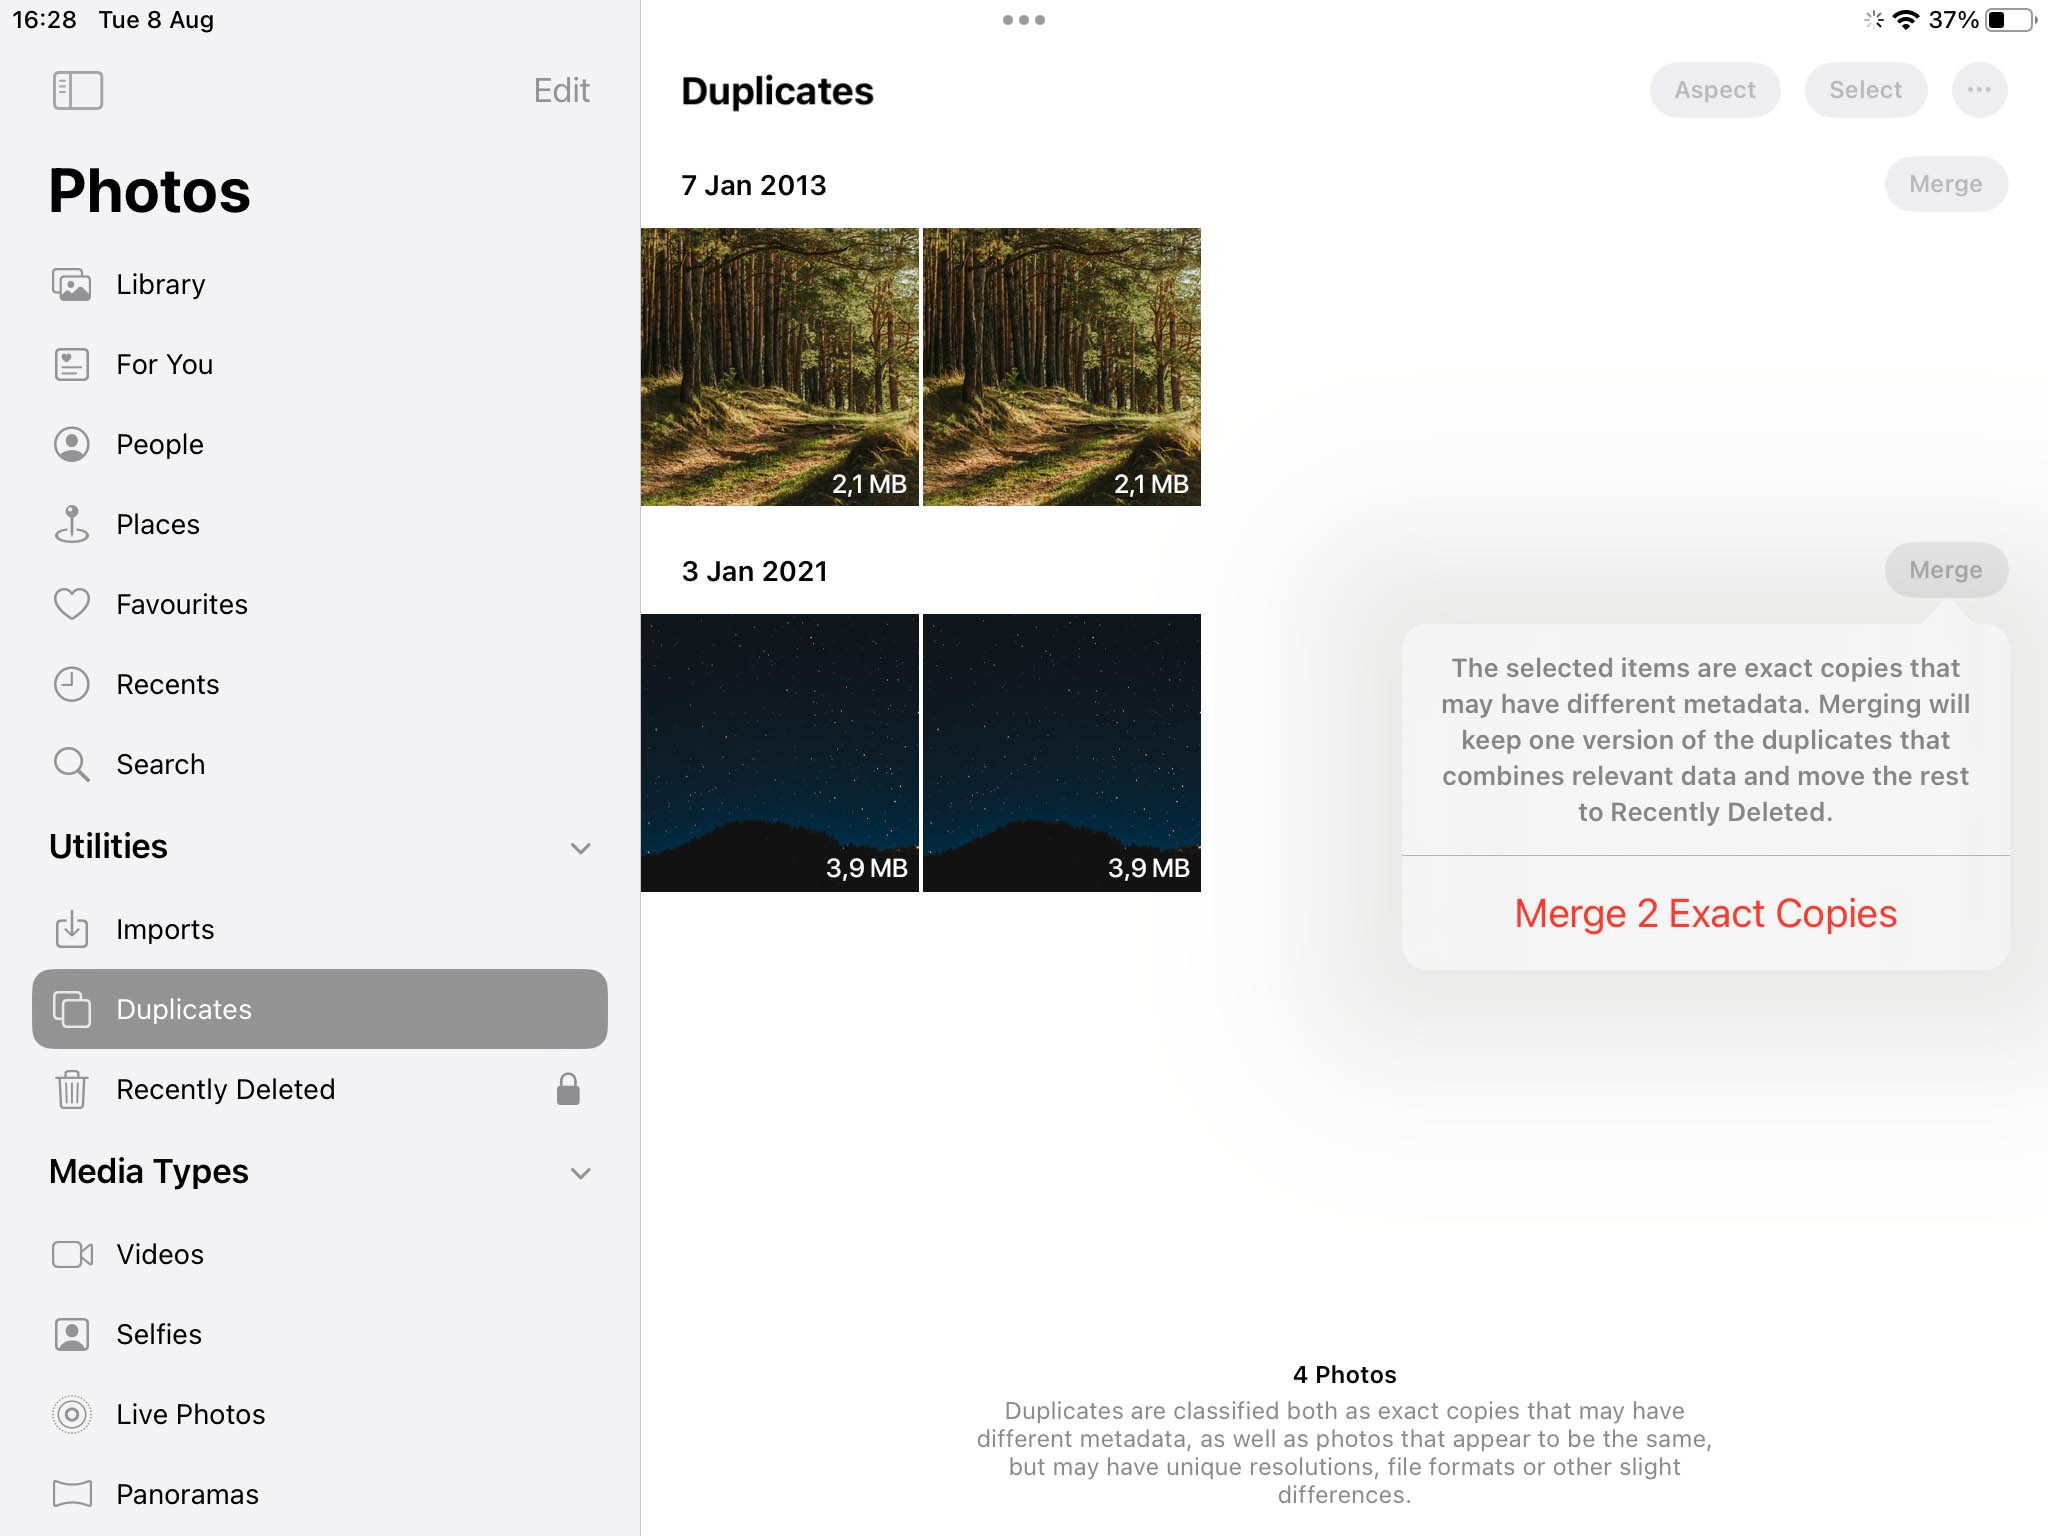 Merge photos in Duplicates album on iPad